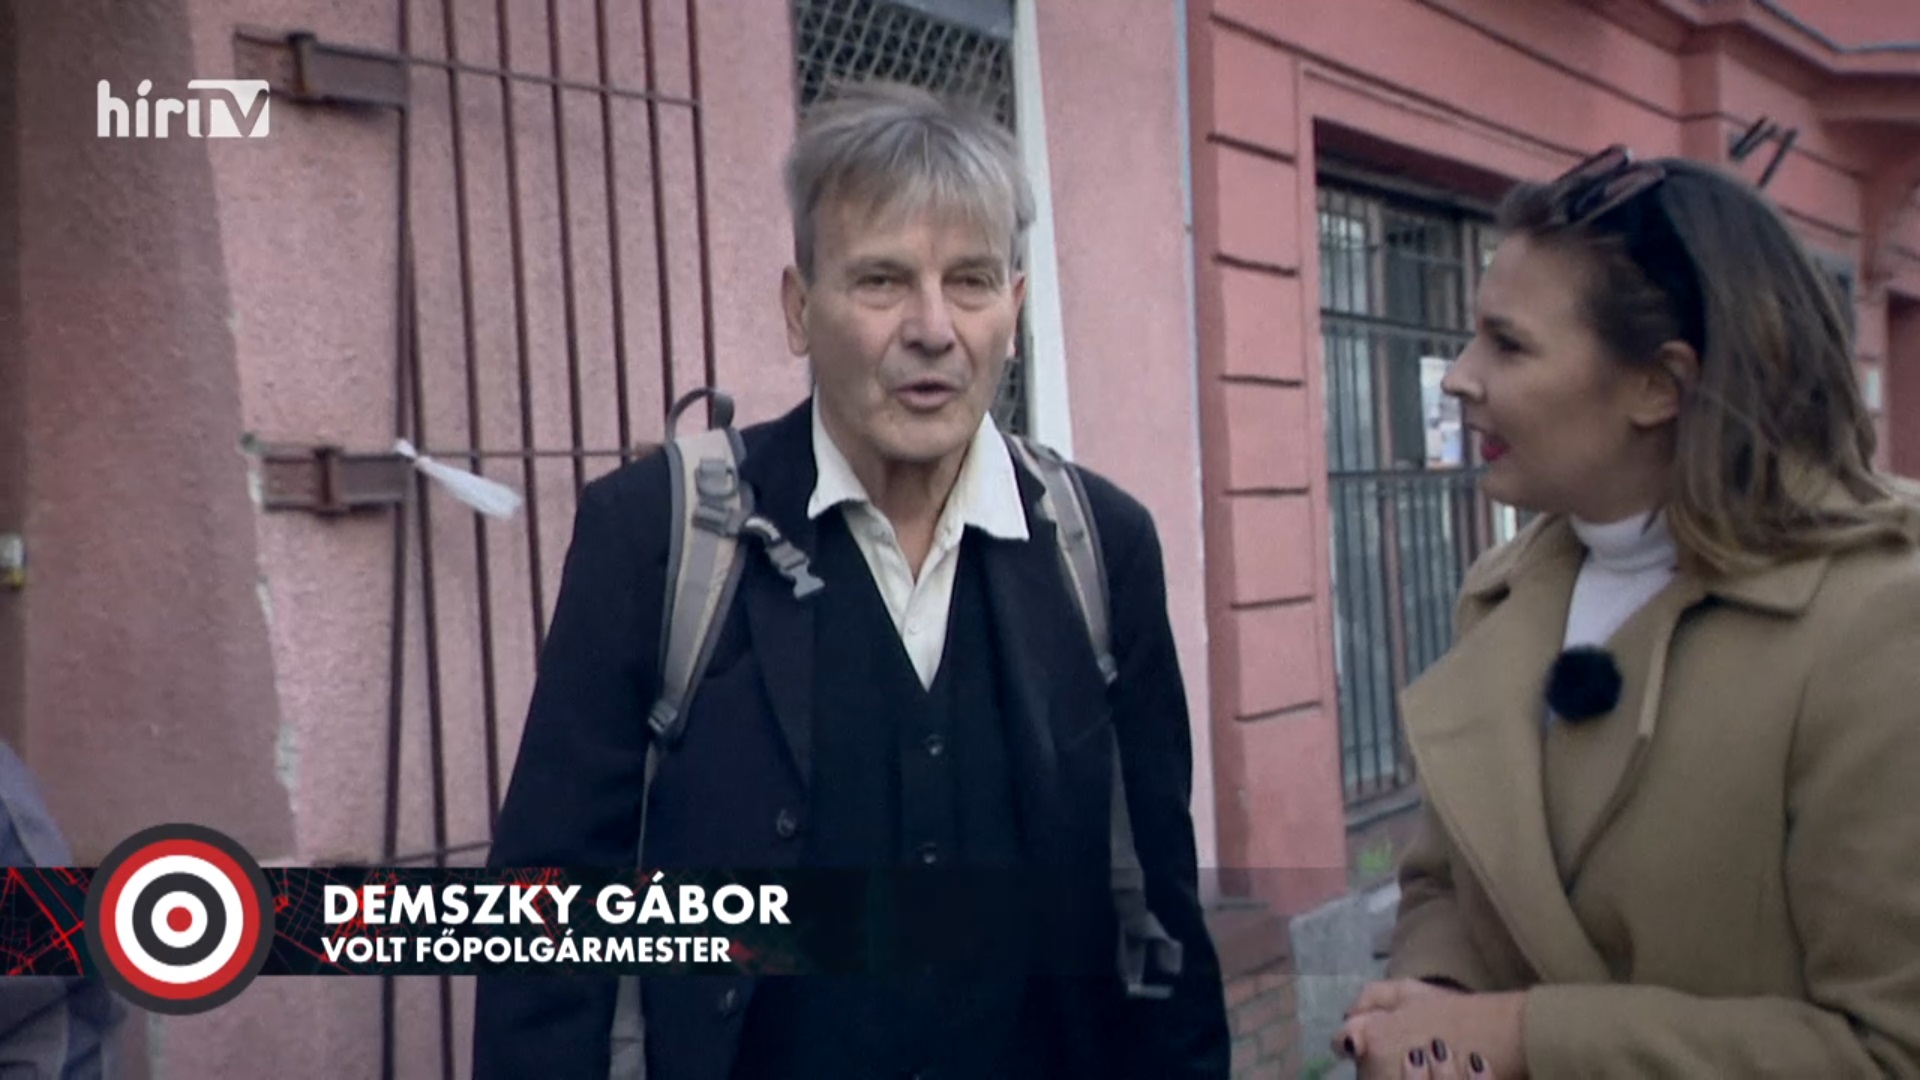 Célpont: Mit keresett Iványi Gábornál Demszky Gábor? + videó